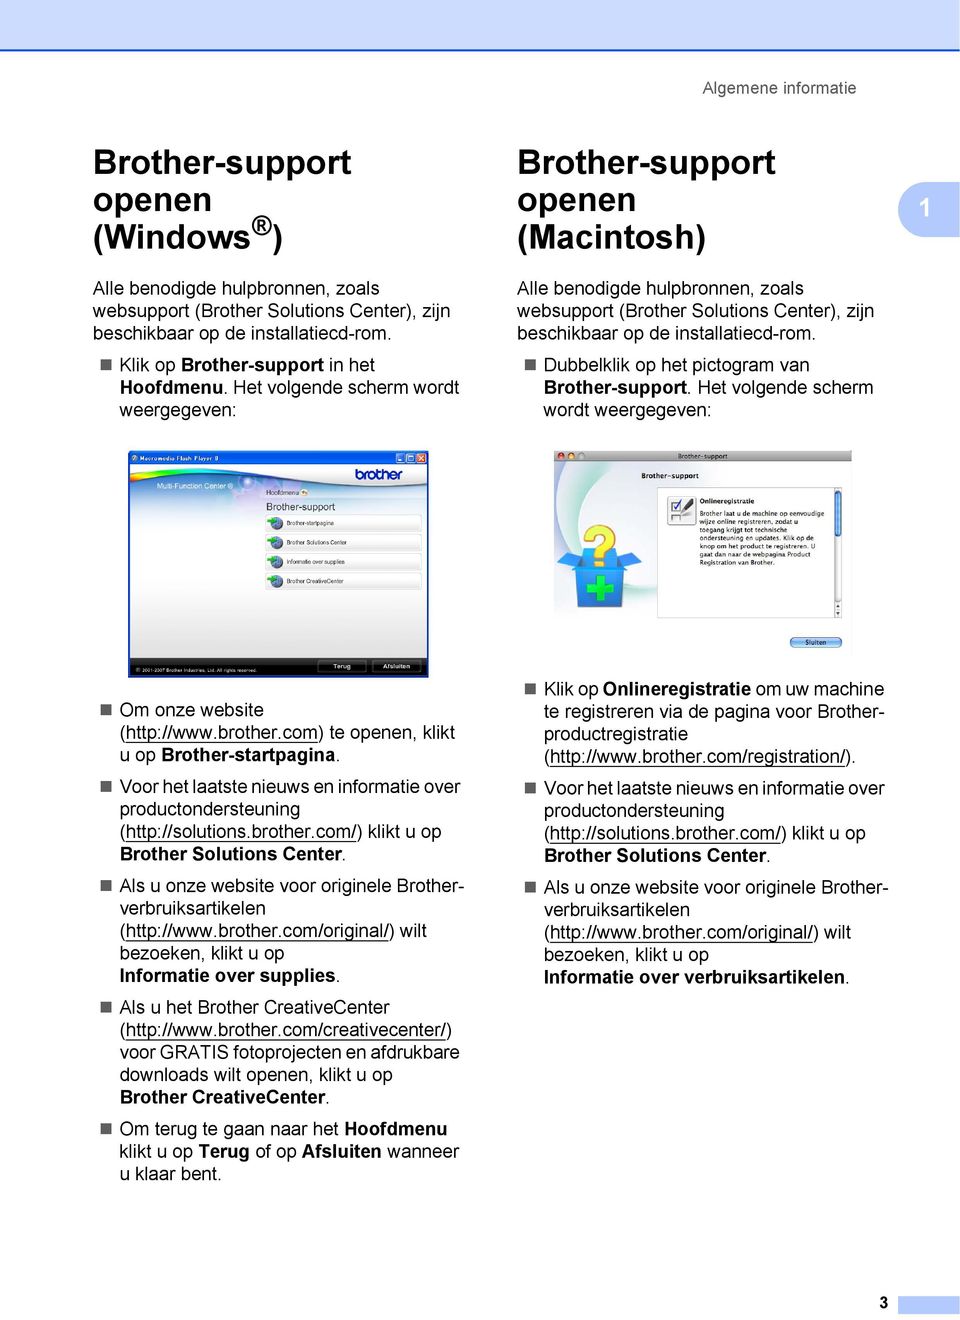 Het volgende scherm wordt weergegeven: Brother-support openen (Macintosh) Alle benodigde hulpbronnen, zoals websupport (Brother Solutions Center), zijn beschikbaar op de installatiecd-rom.